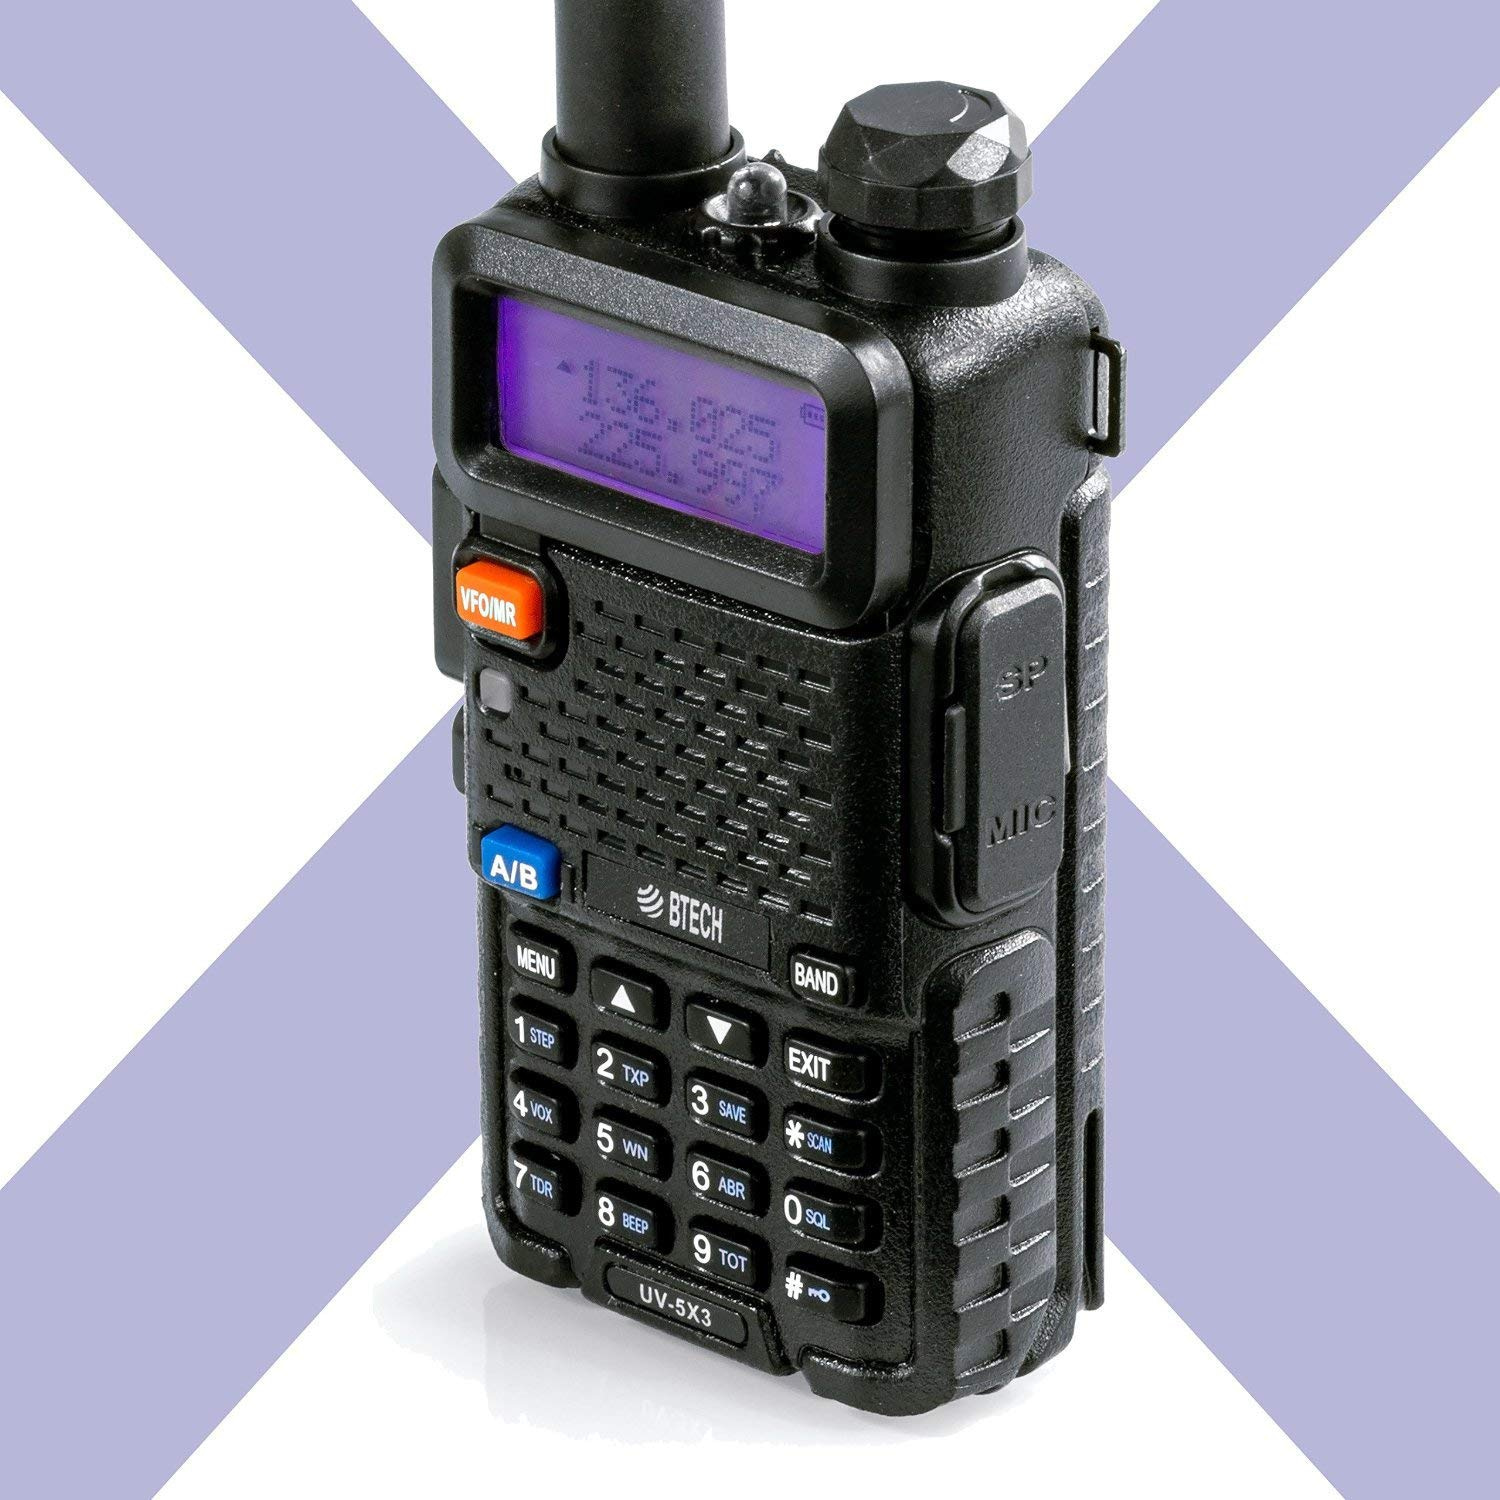 BTECH UV-5X3 5-Watt Tri-Band Radio VHF